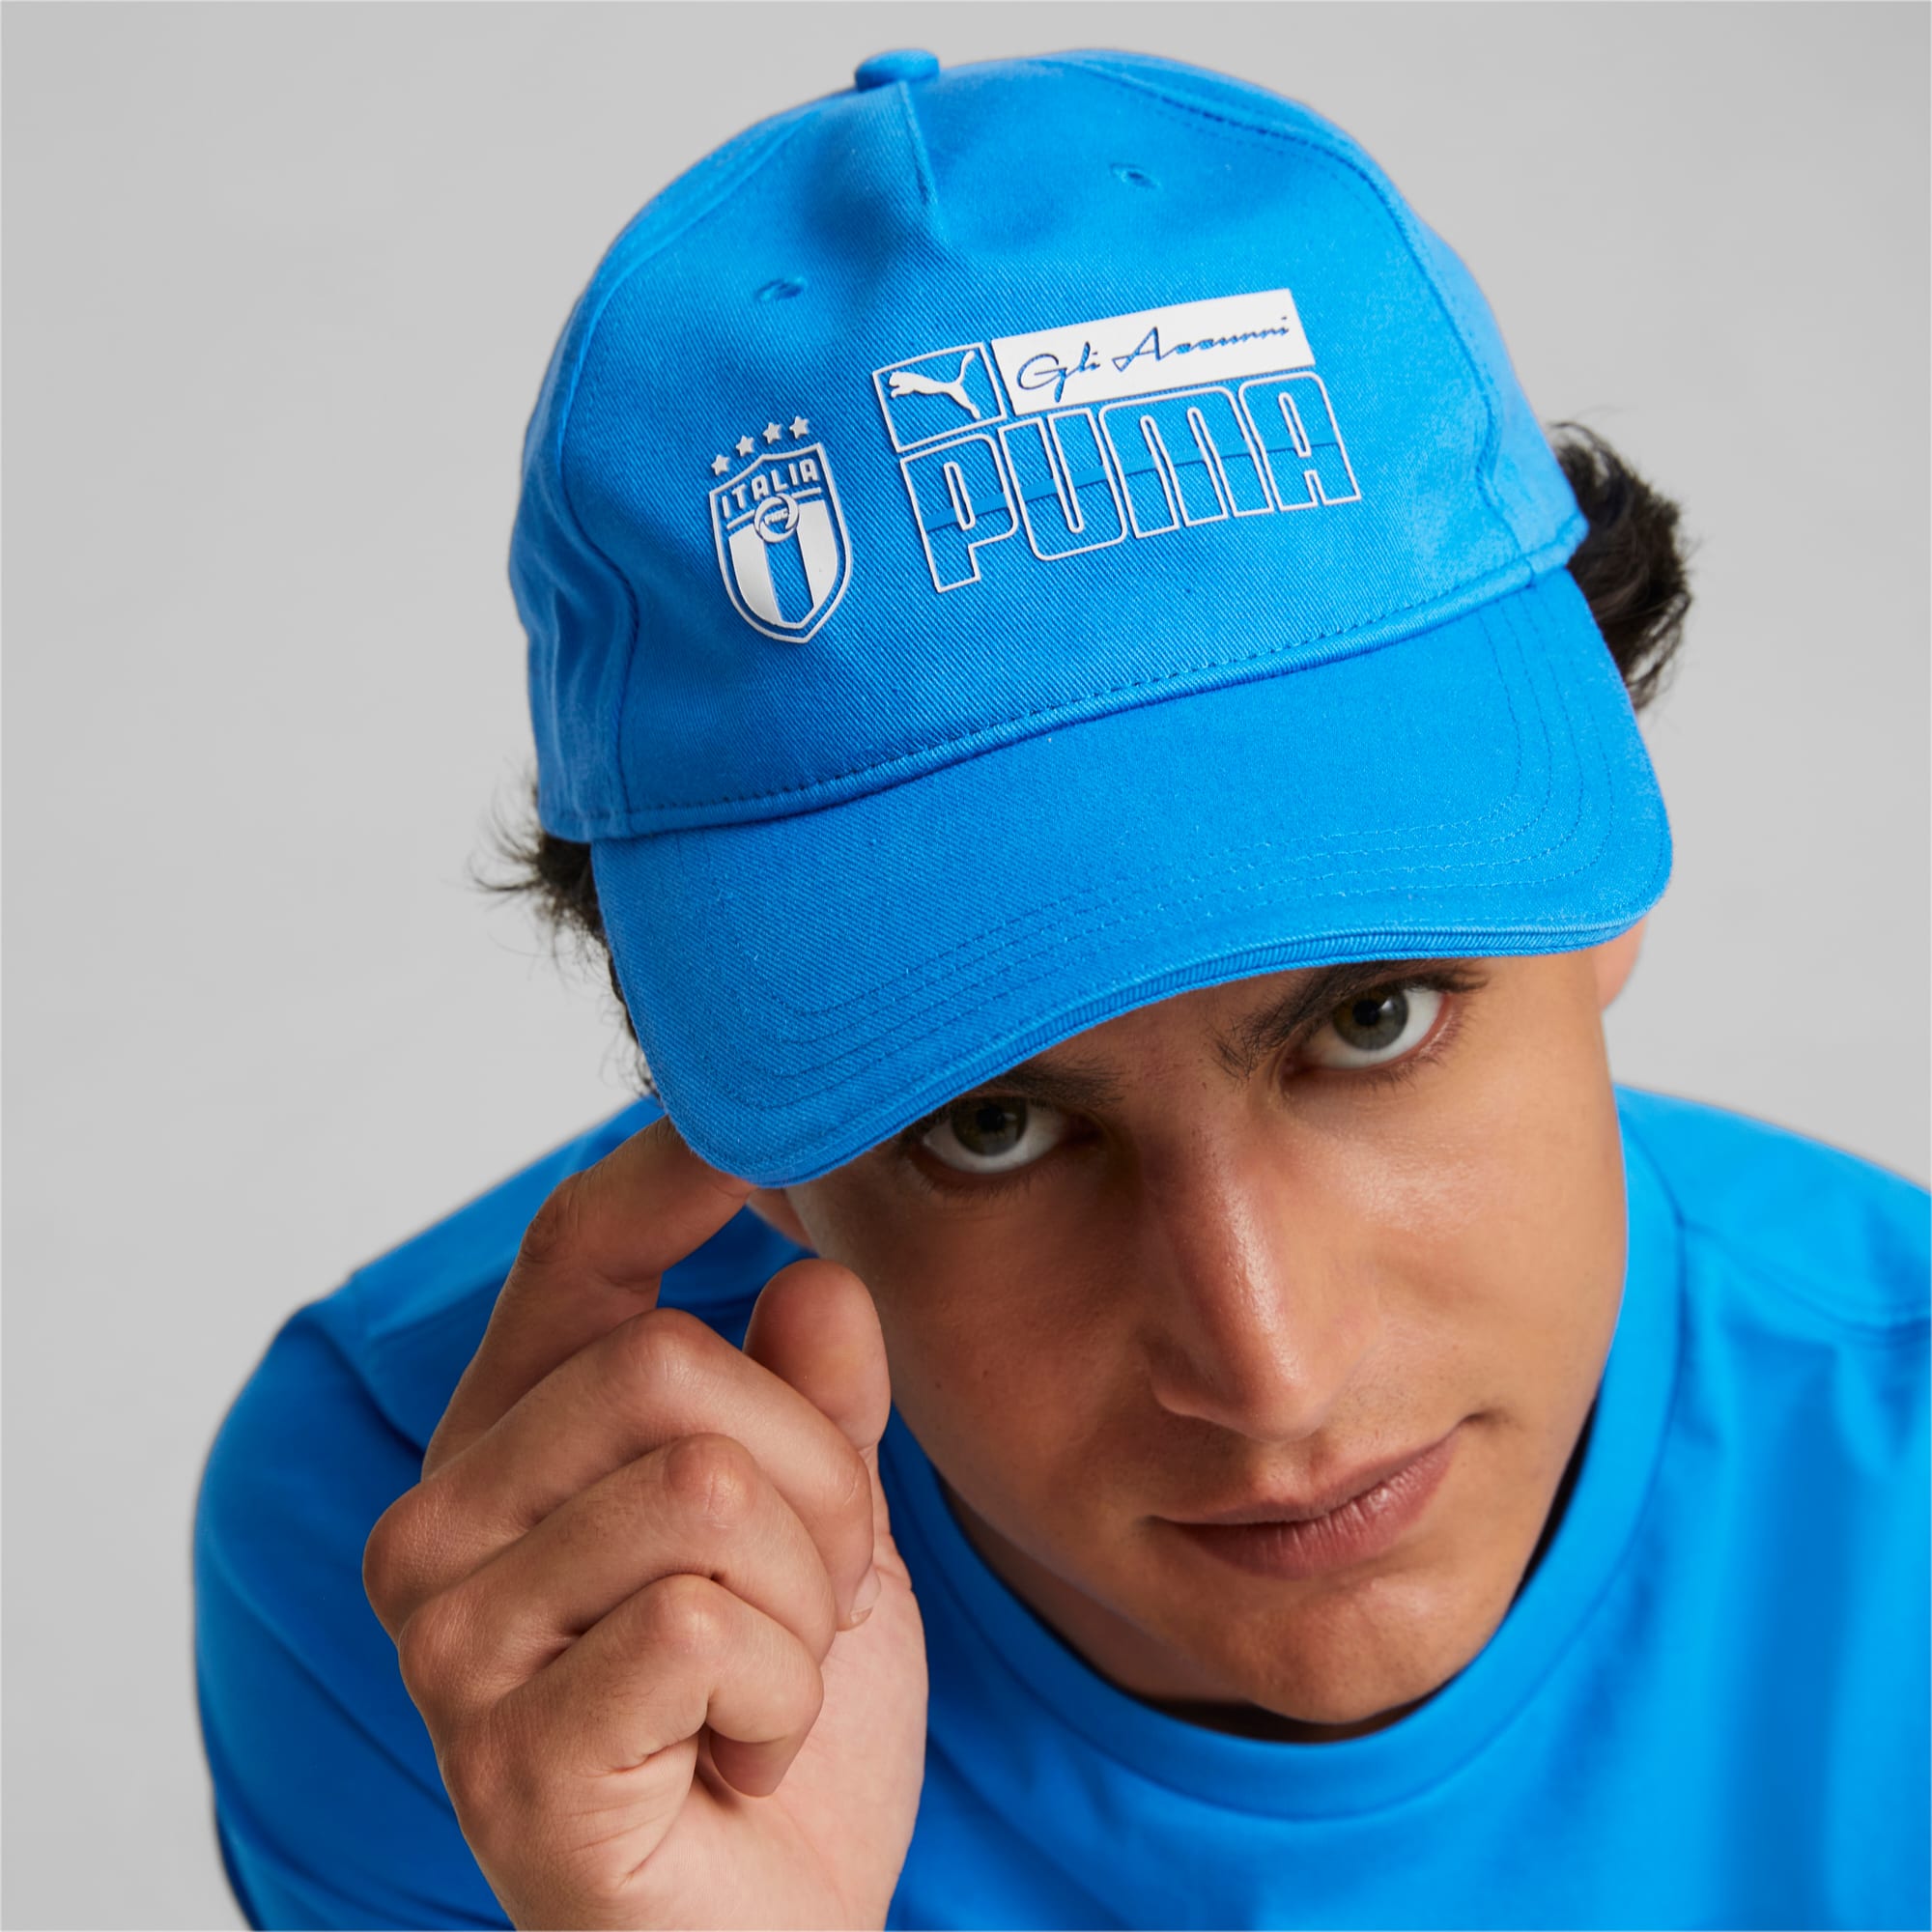 01 Blue Baseball Cap Puma Zone FtblCore Ignite Italy 023950 Soccer –